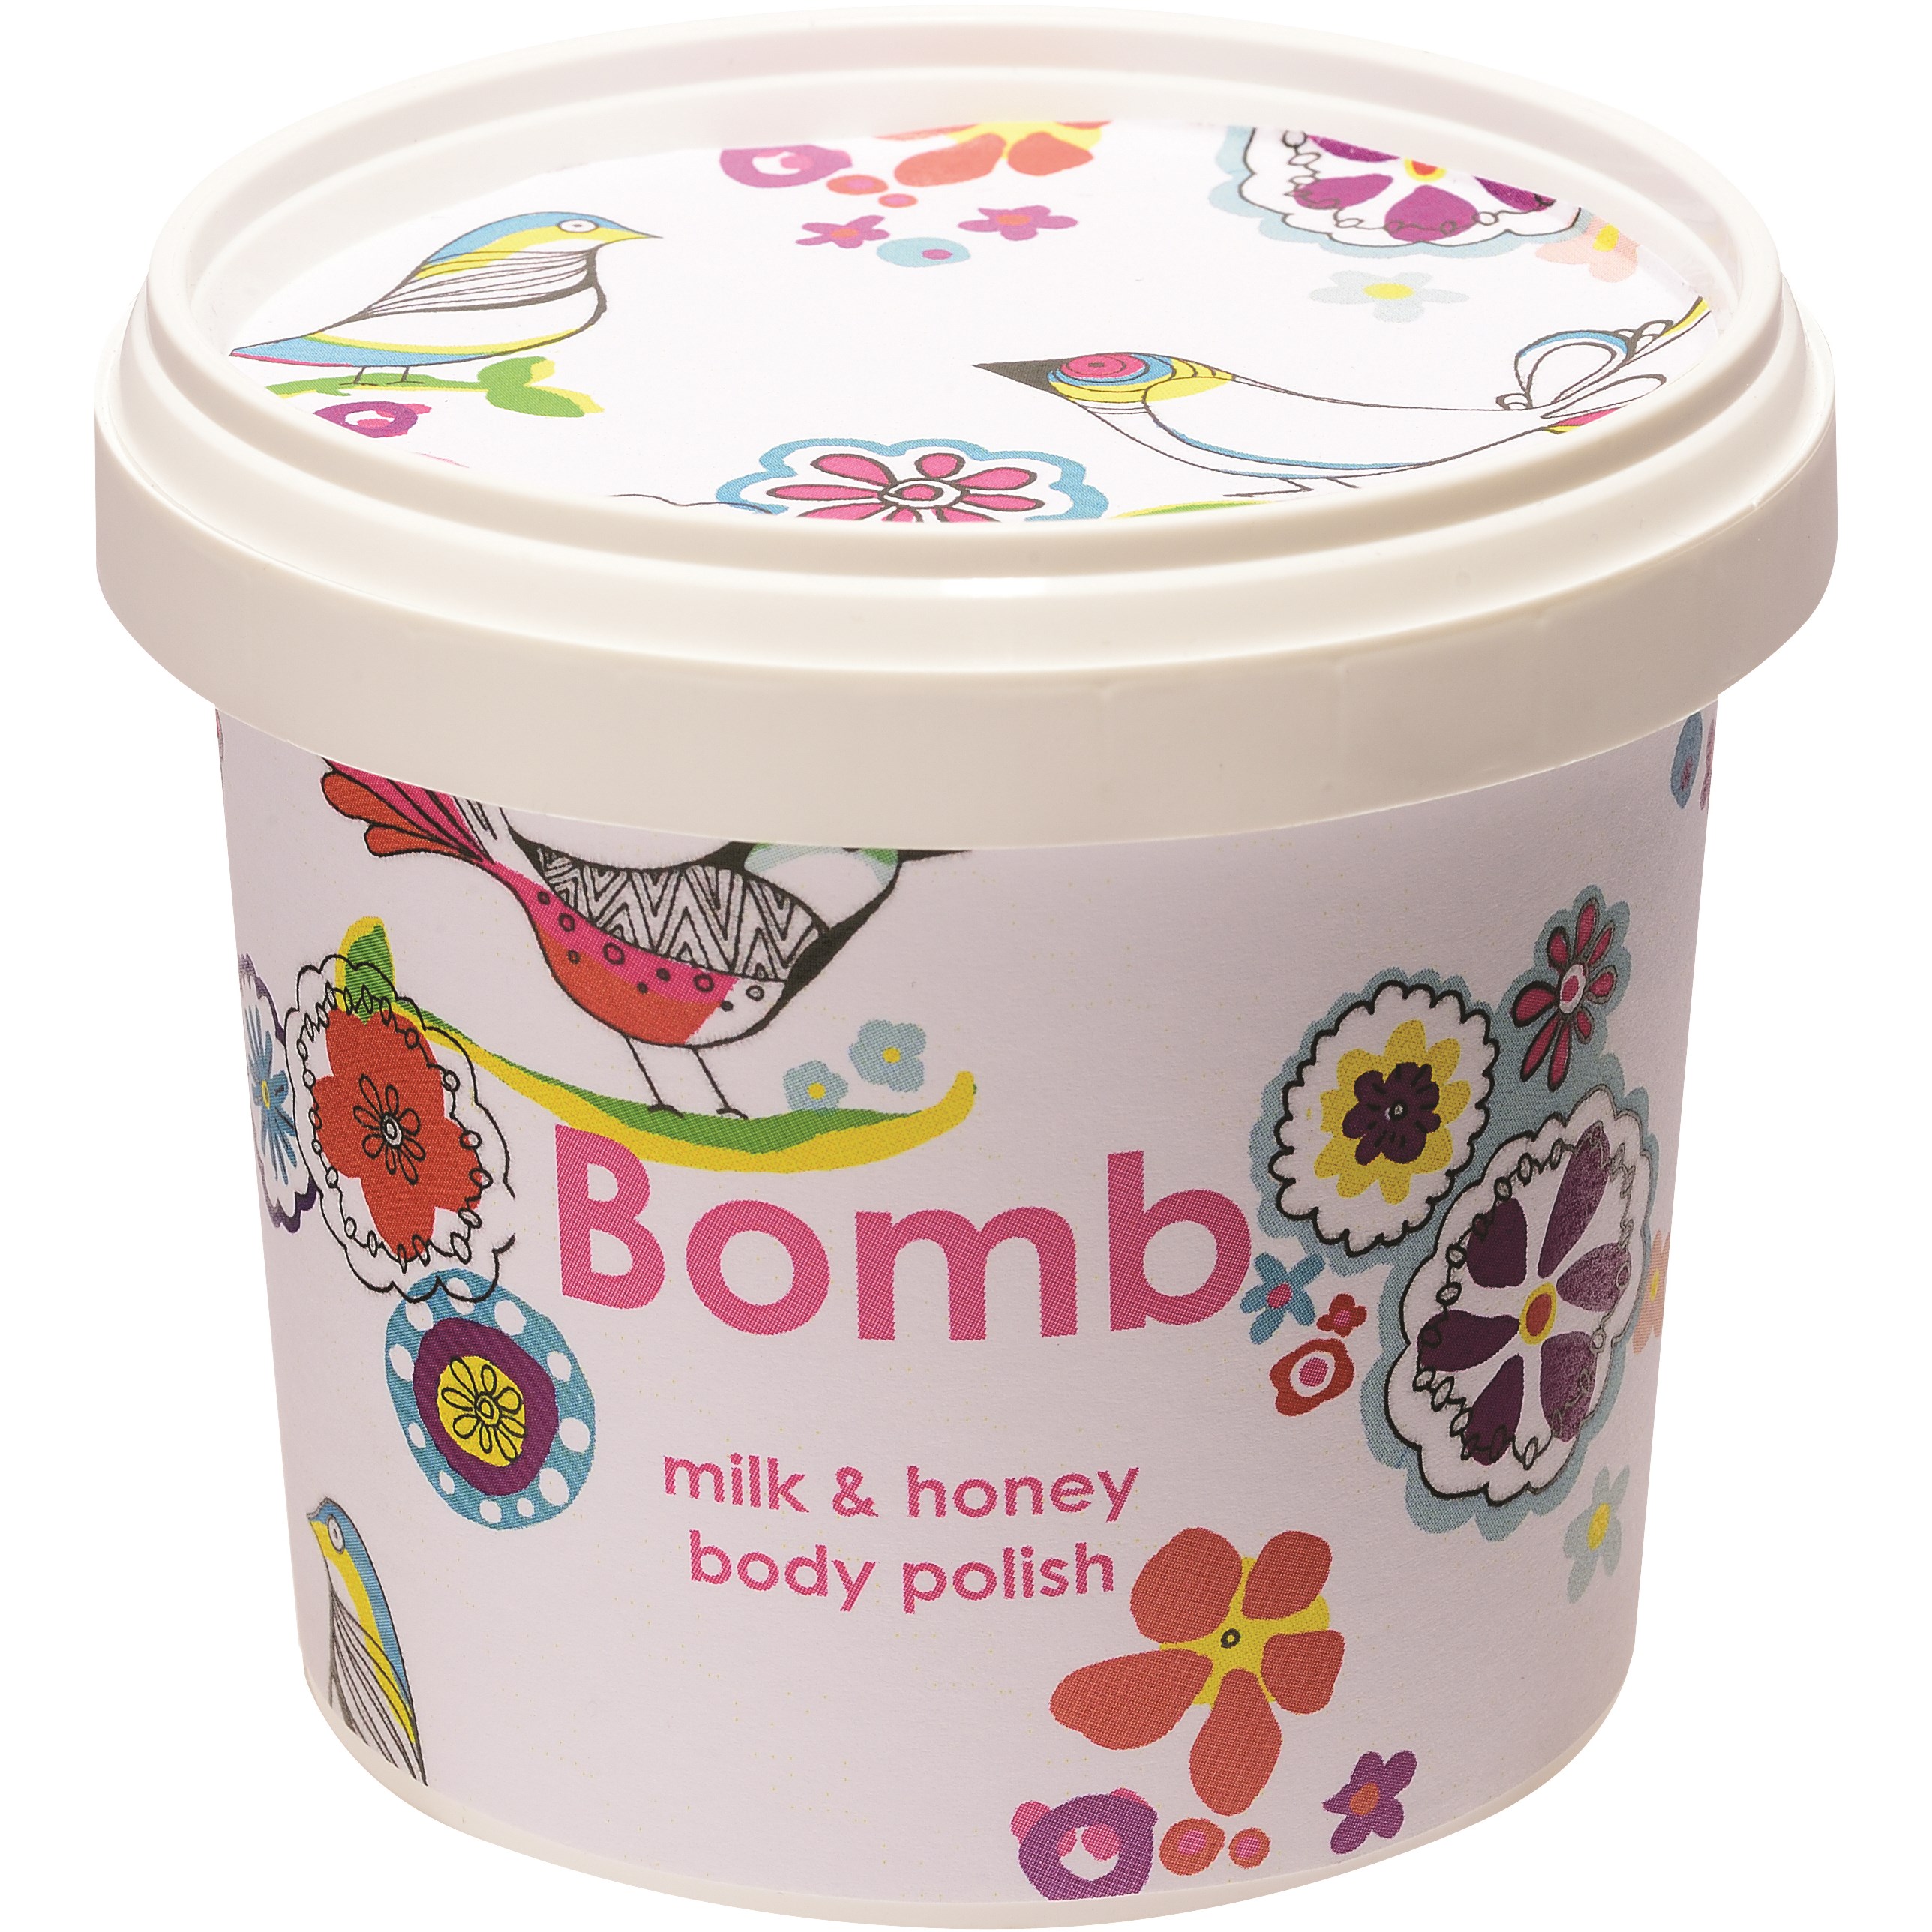 Bilde av Bomb Cosmetics Bomb Body Polish Milk & Honey